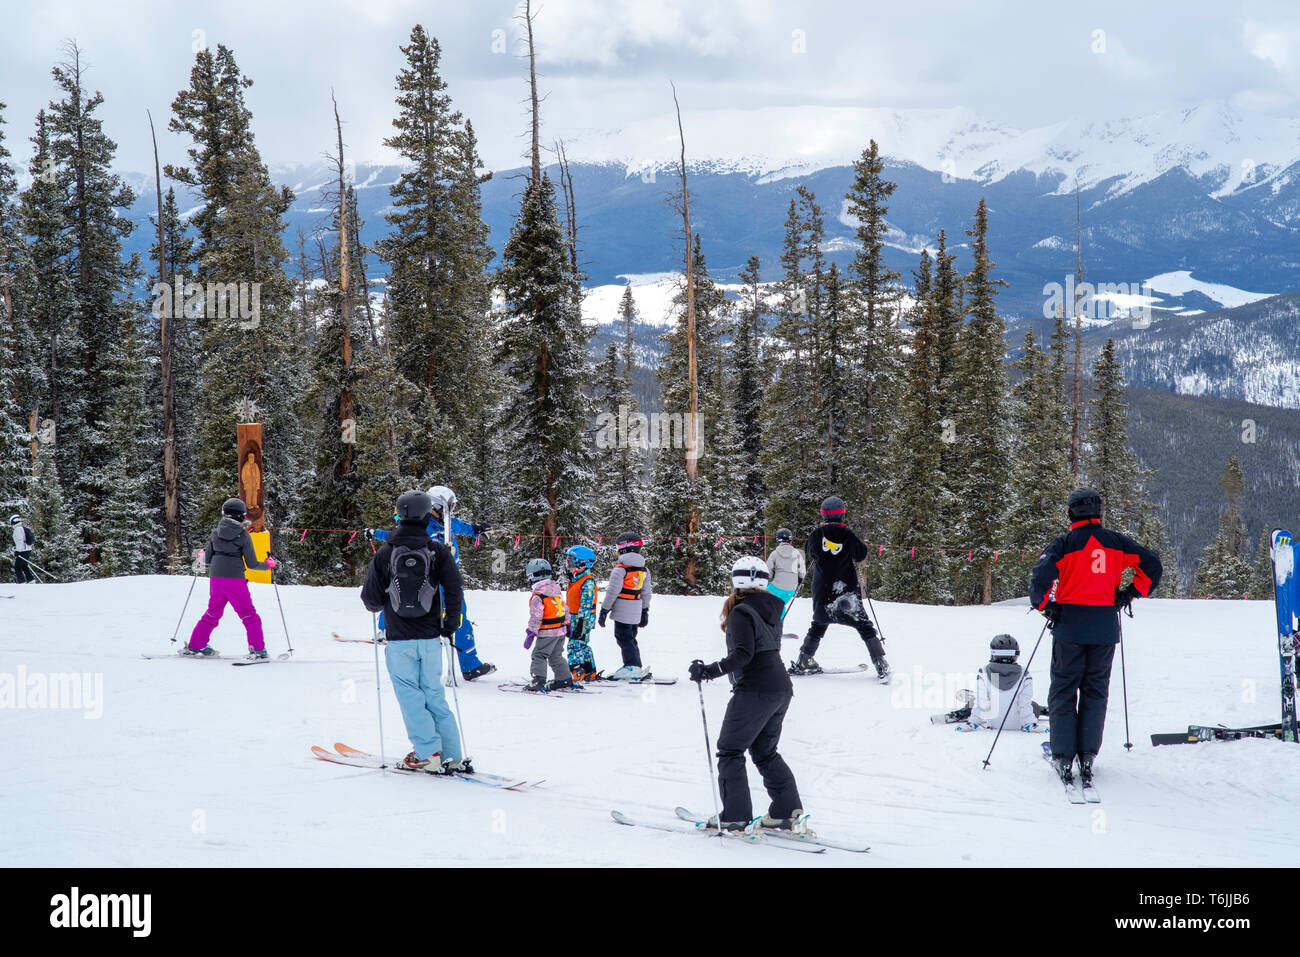 Ski school at Keystone Ski Resort, Keystone, Colorado, USA Stock ...